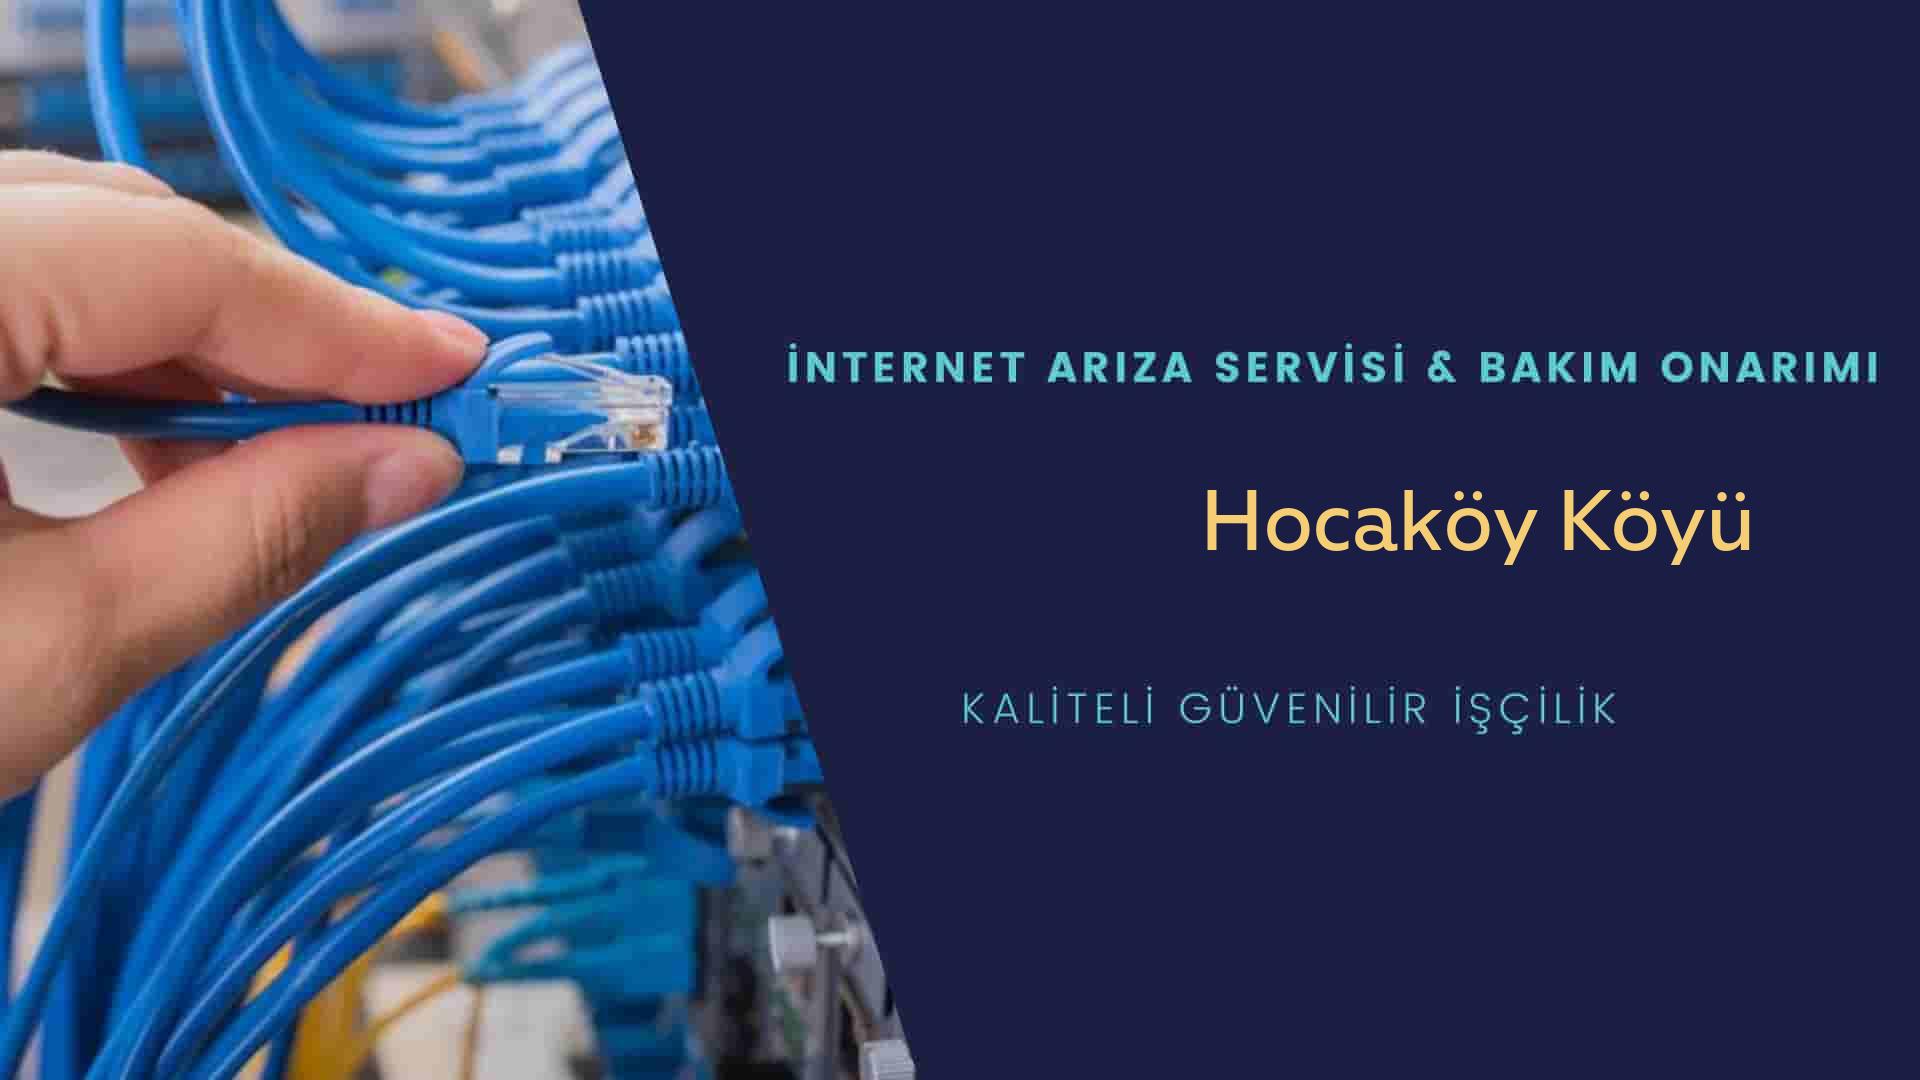 Hocaköy Köyü internet kablosu çekimi yapan yerler veya elektrikçiler mi? arıyorsunuz doğru yerdesiniz o zaman sizlere 7/24 yardımcı olacak profesyonel ustalarımız bir telefon kadar yakındır size.